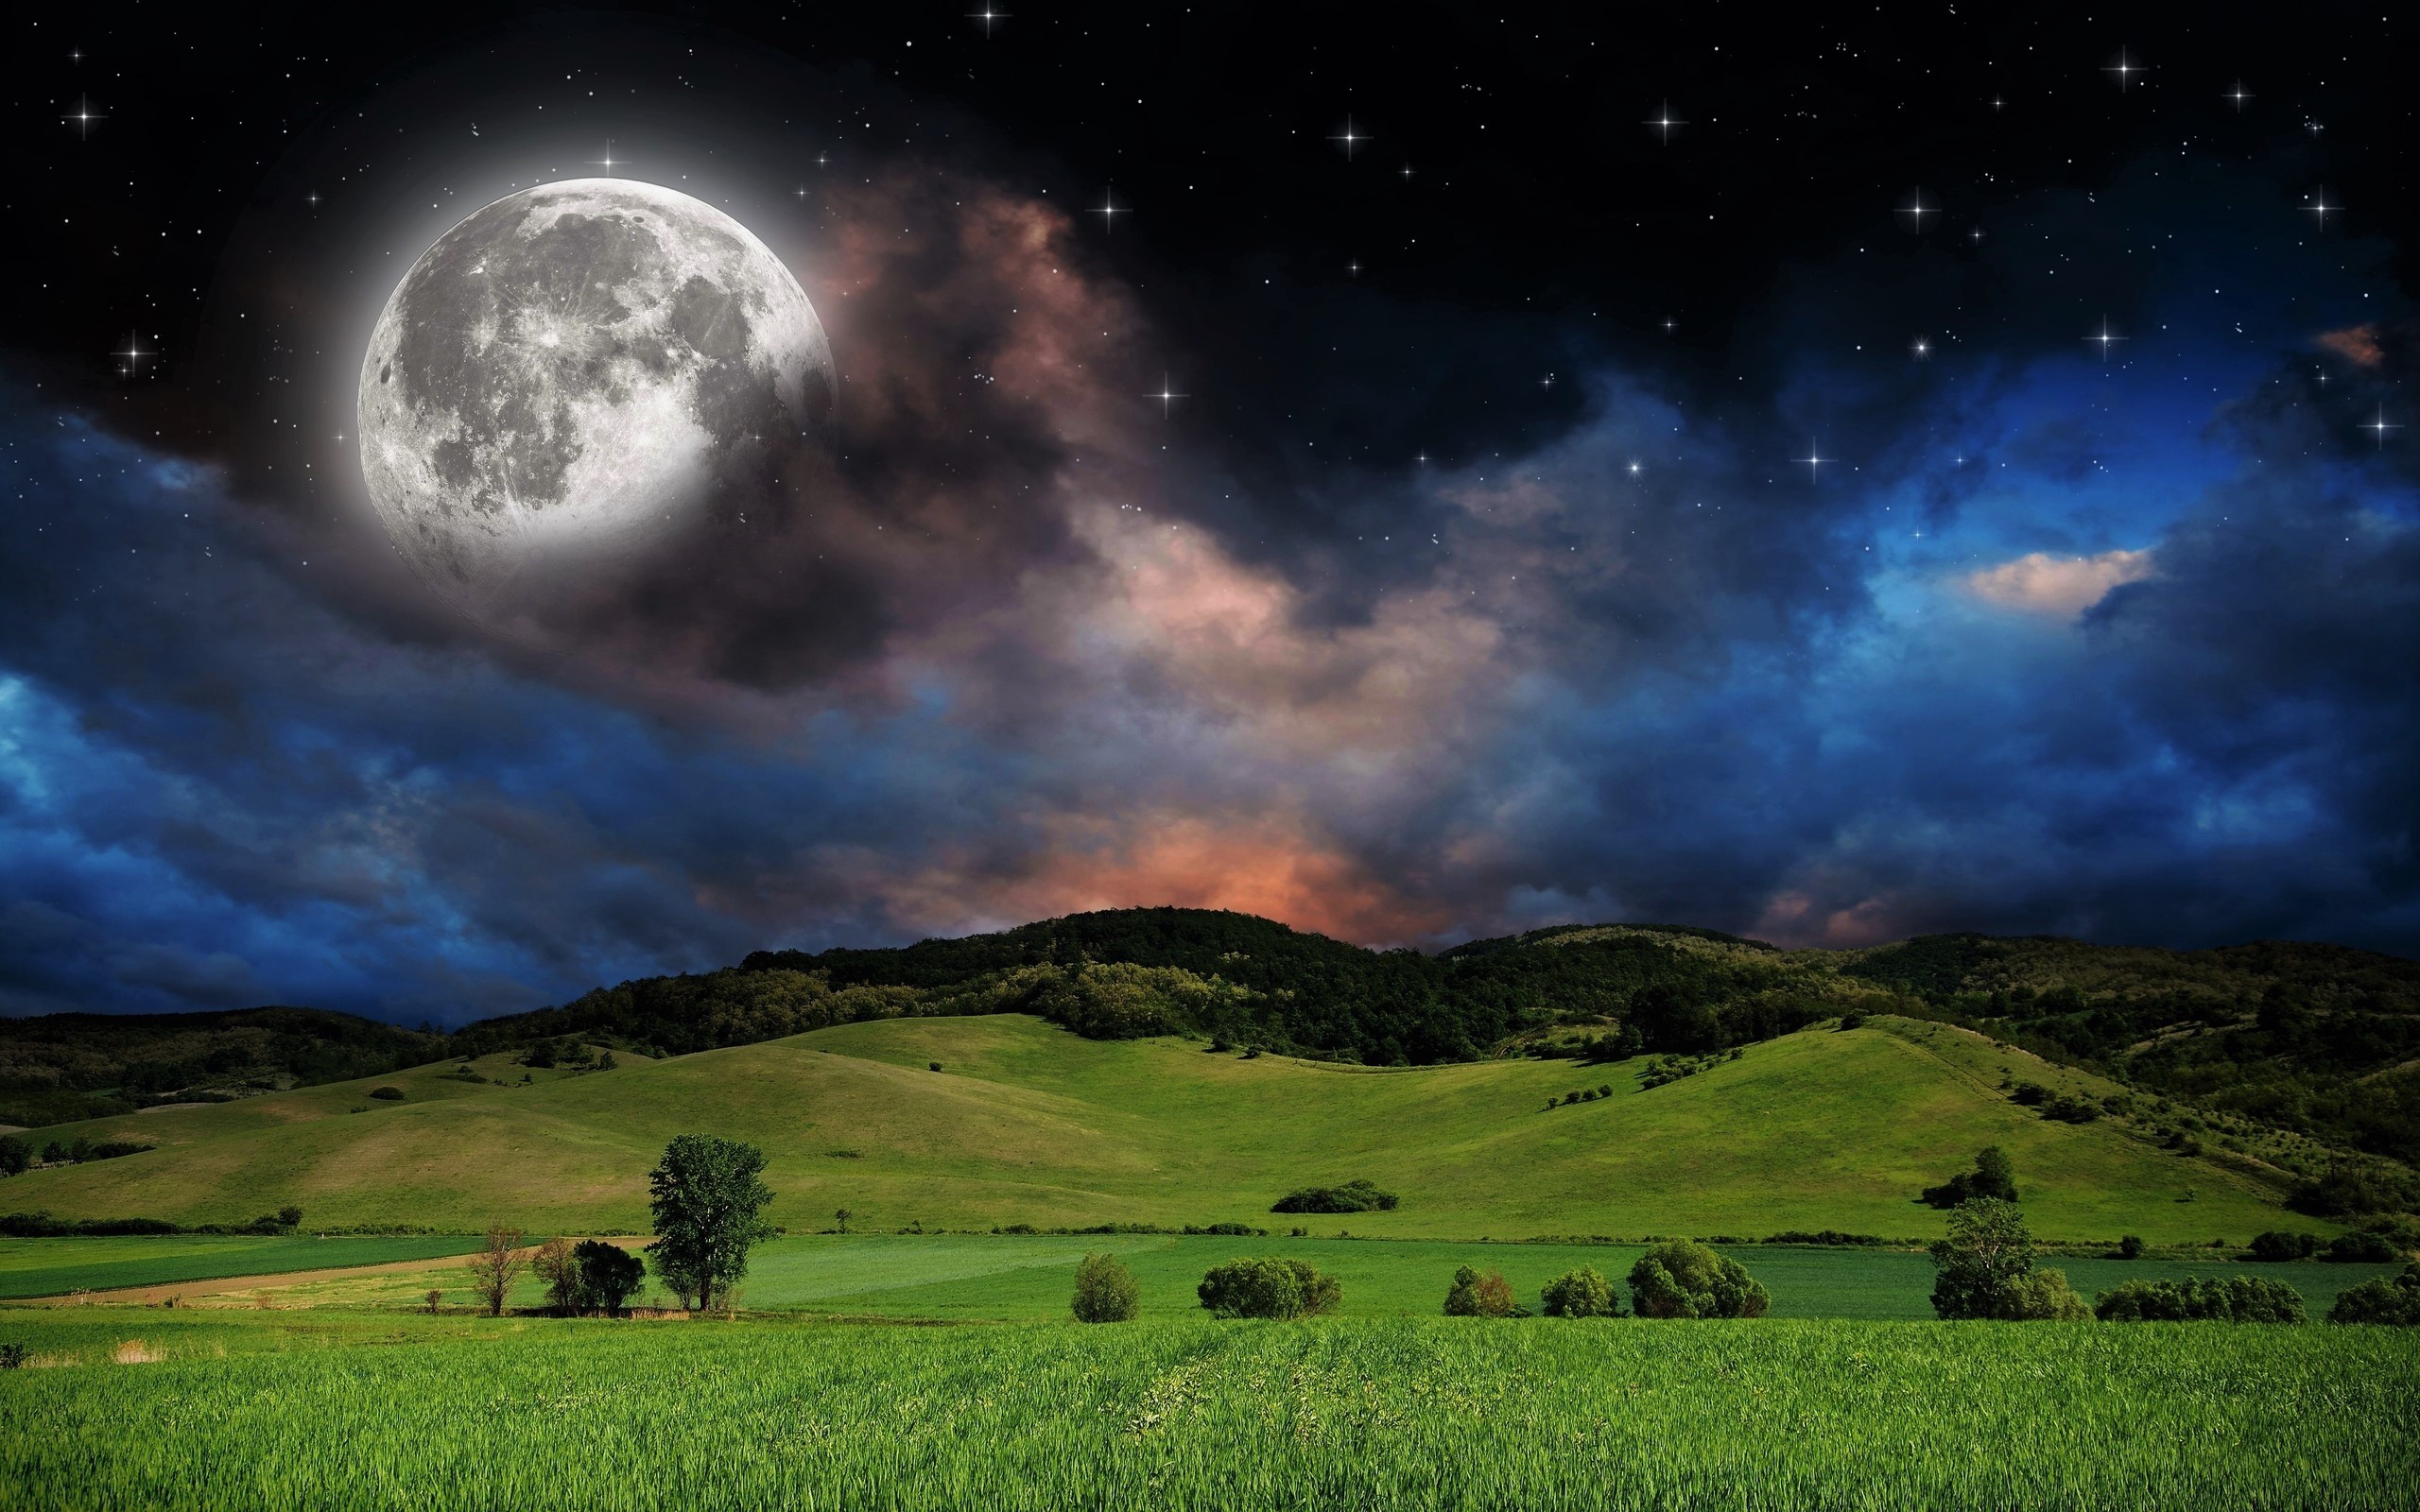 Скачать обои бесплатно Небо, Звезды, Луна, Лес, Звездное Небо, Поле, Луг, Земля/природа, Мечтательный Мир картинка на рабочий стол ПК